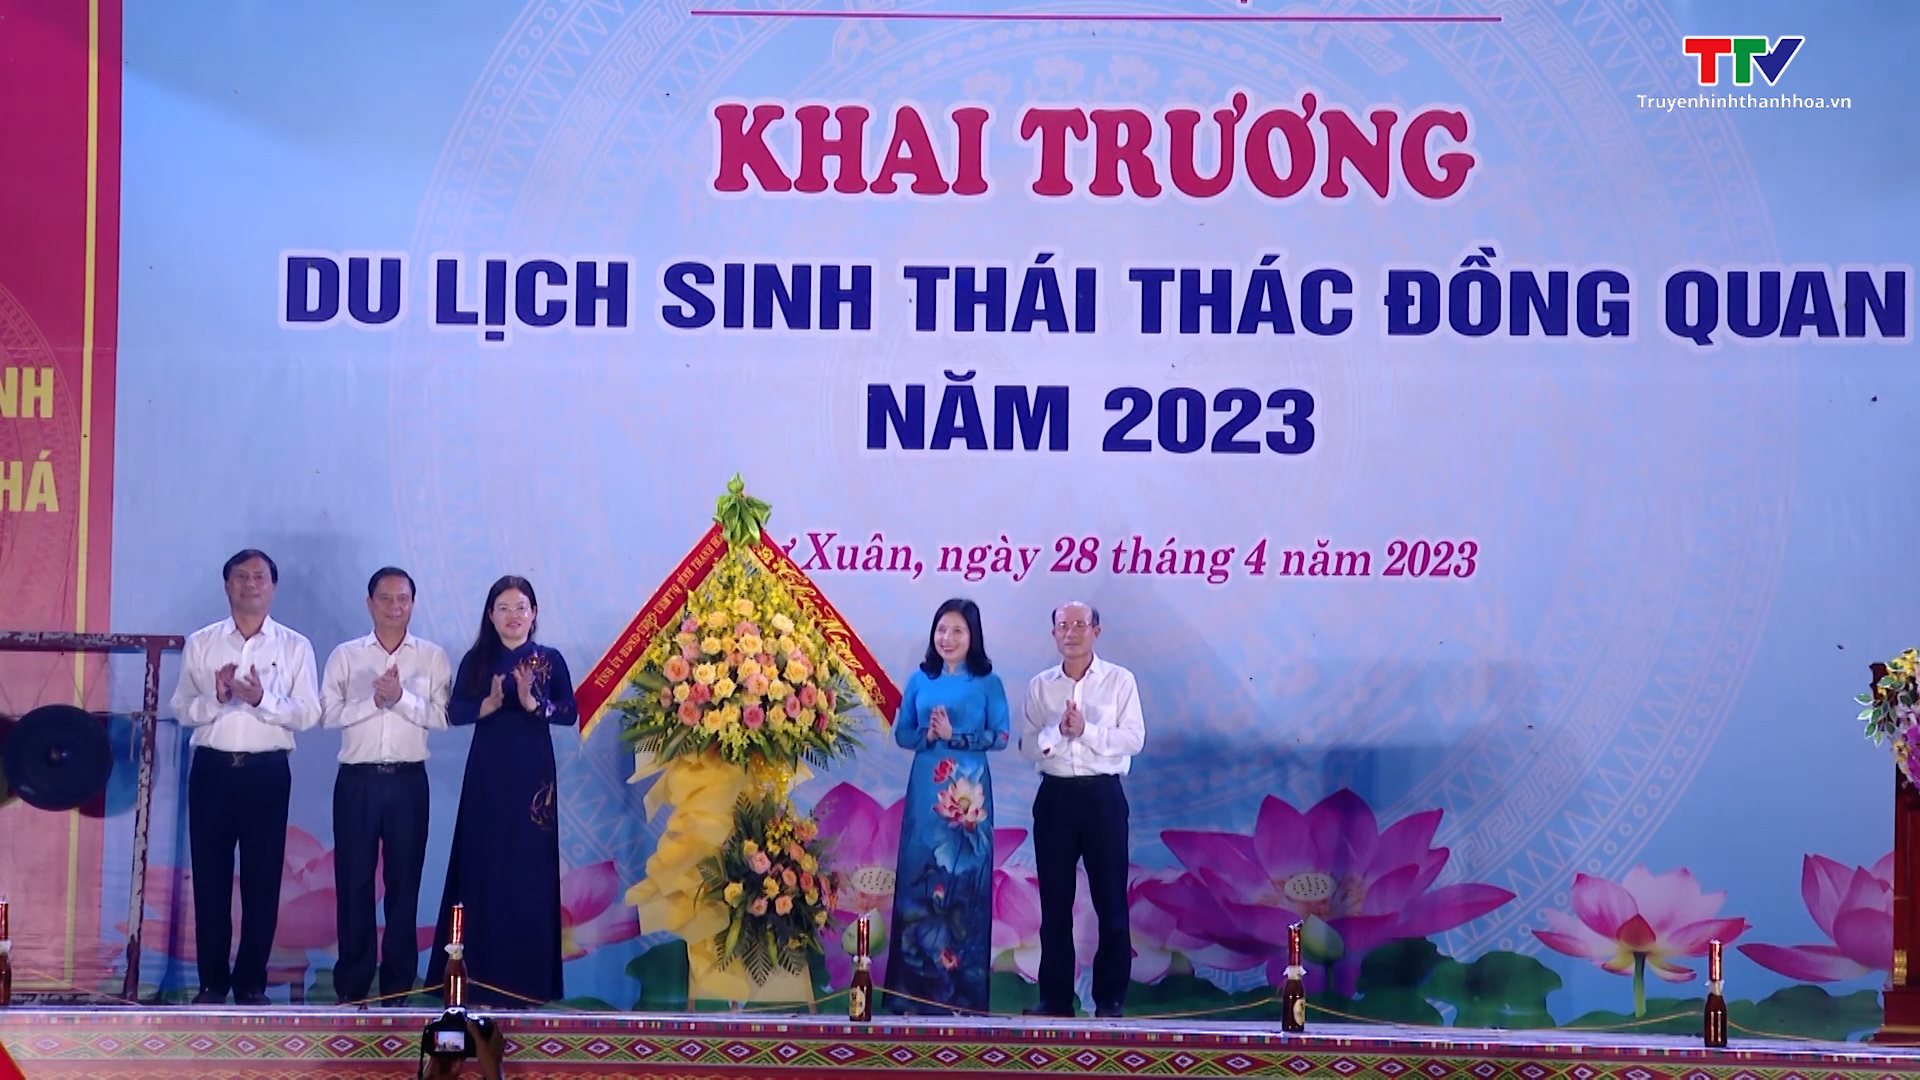 Như Xuân khai trương du lịch sinh thái Thác Đồng Quan năm 2023 - Ảnh 5.